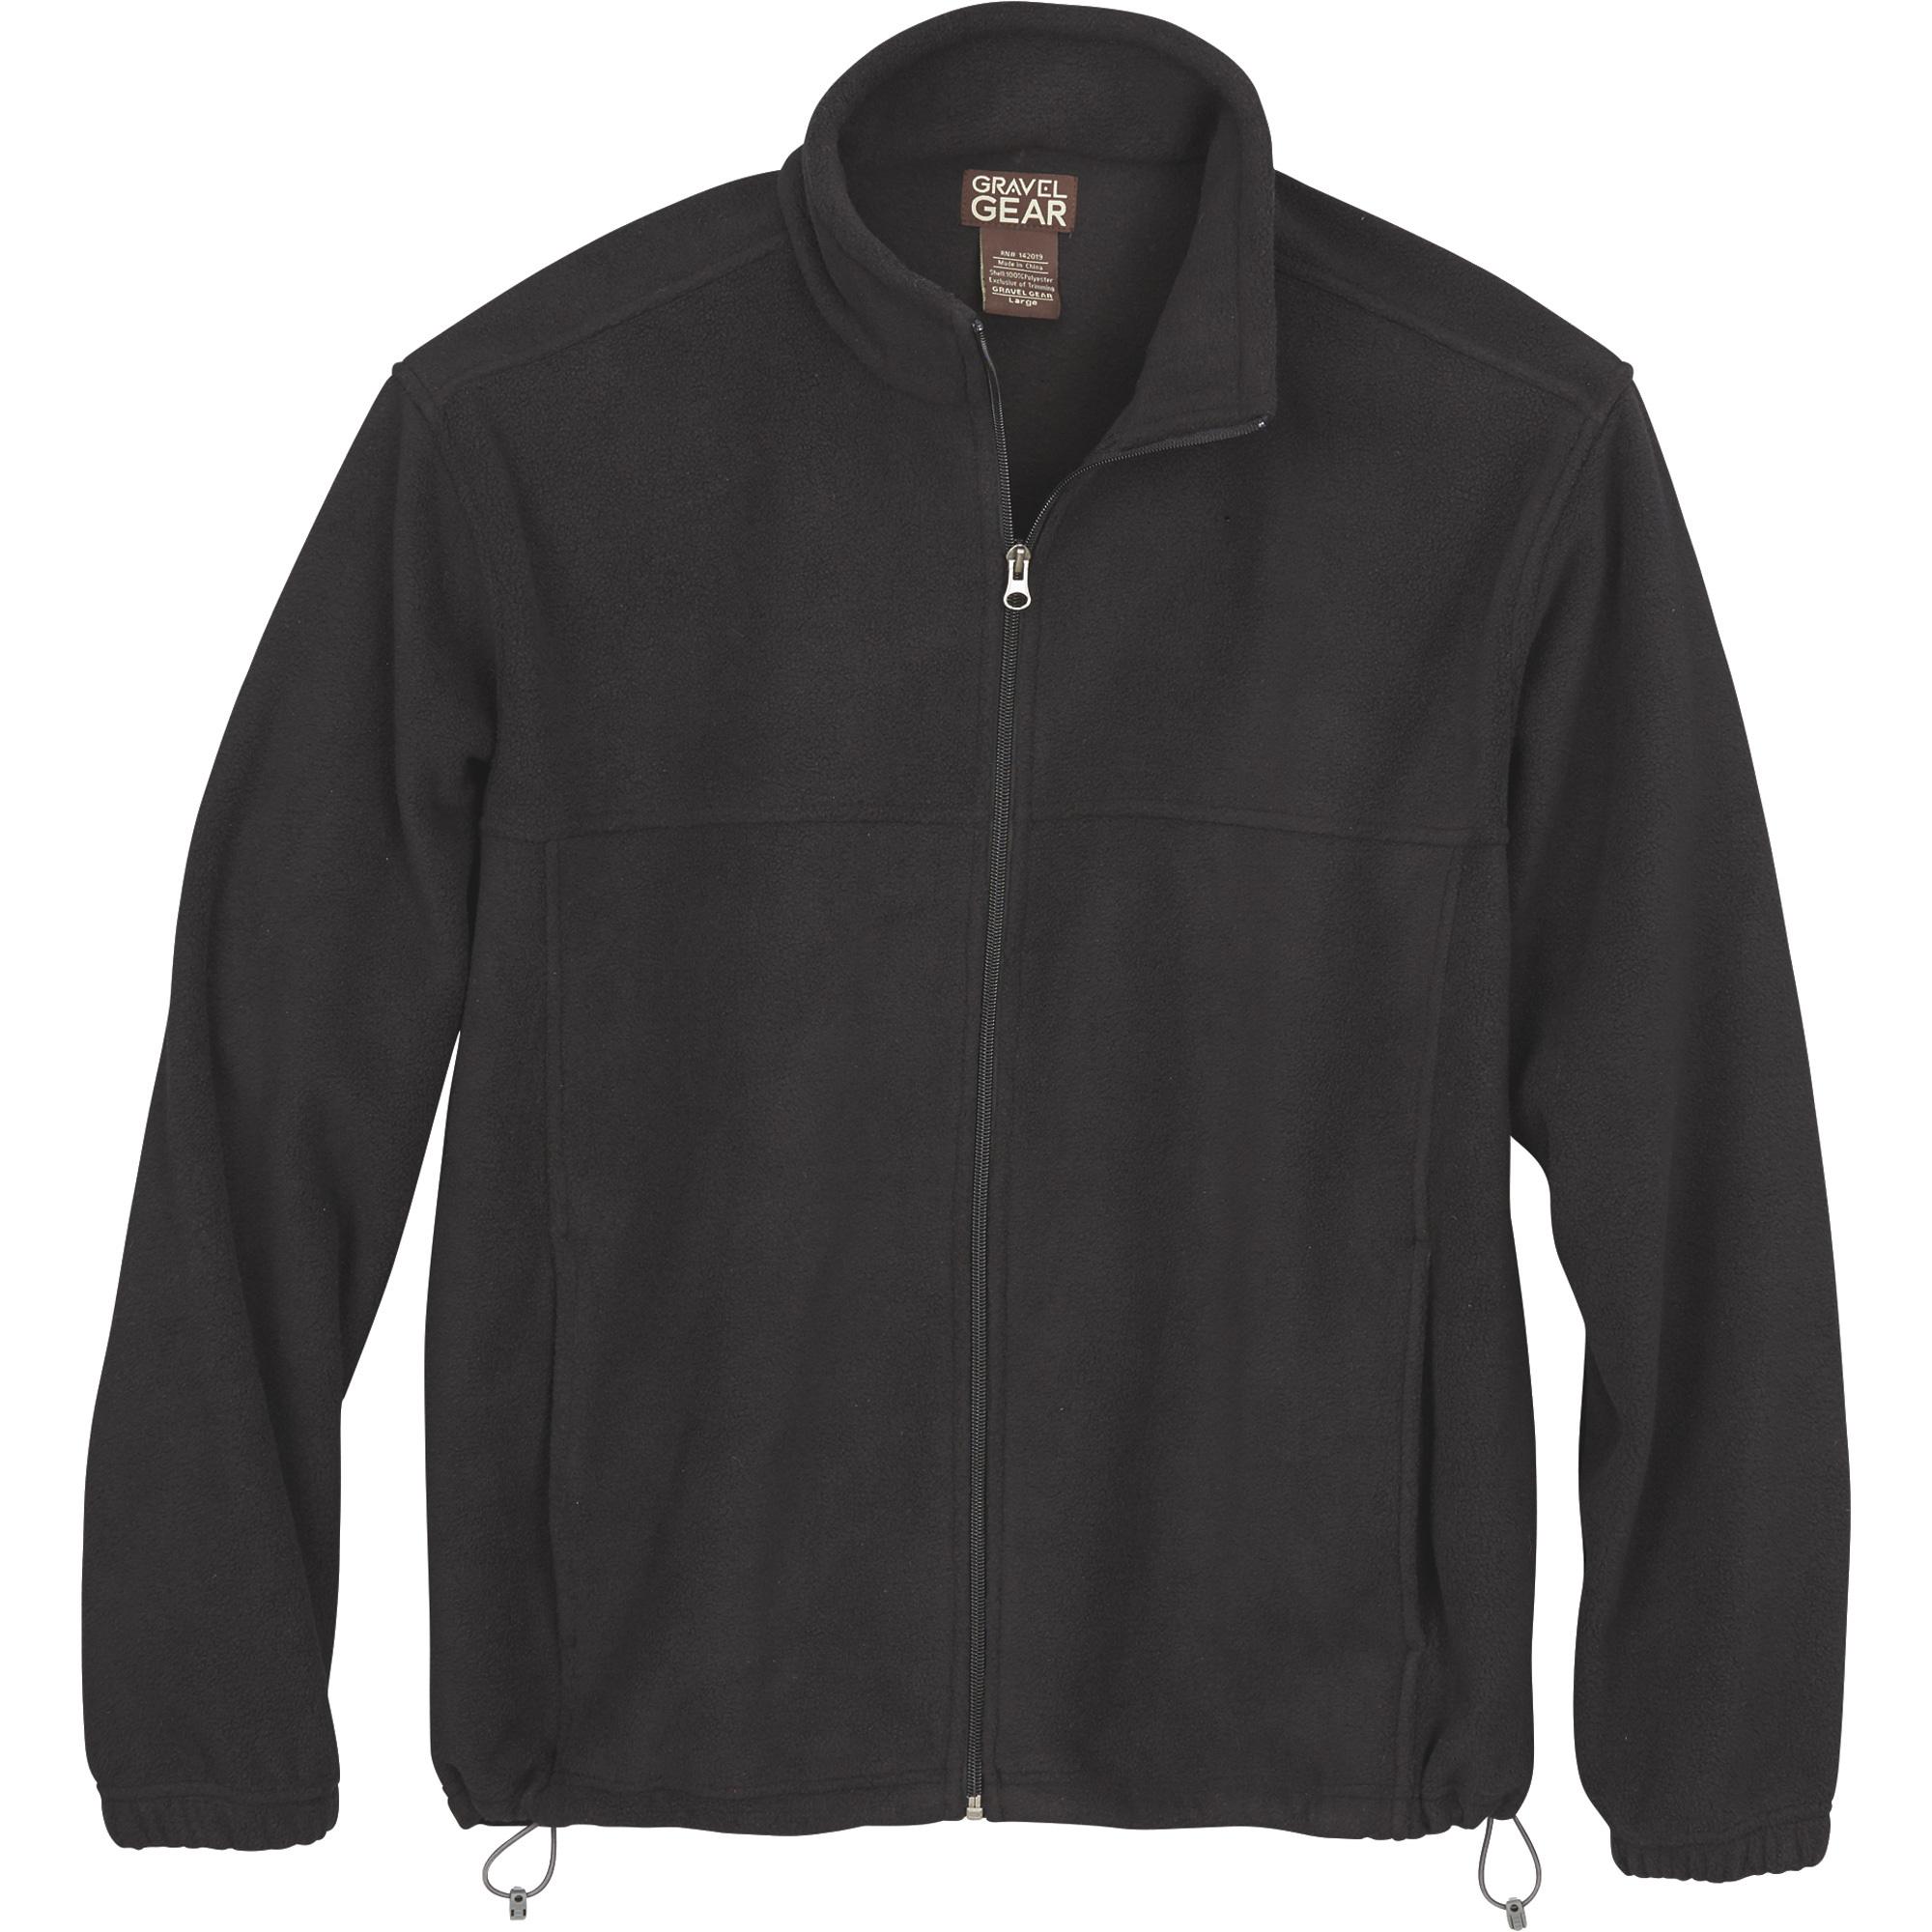 Gravel Gear Men's Zip-Up Fleece Jacket - Black, Large